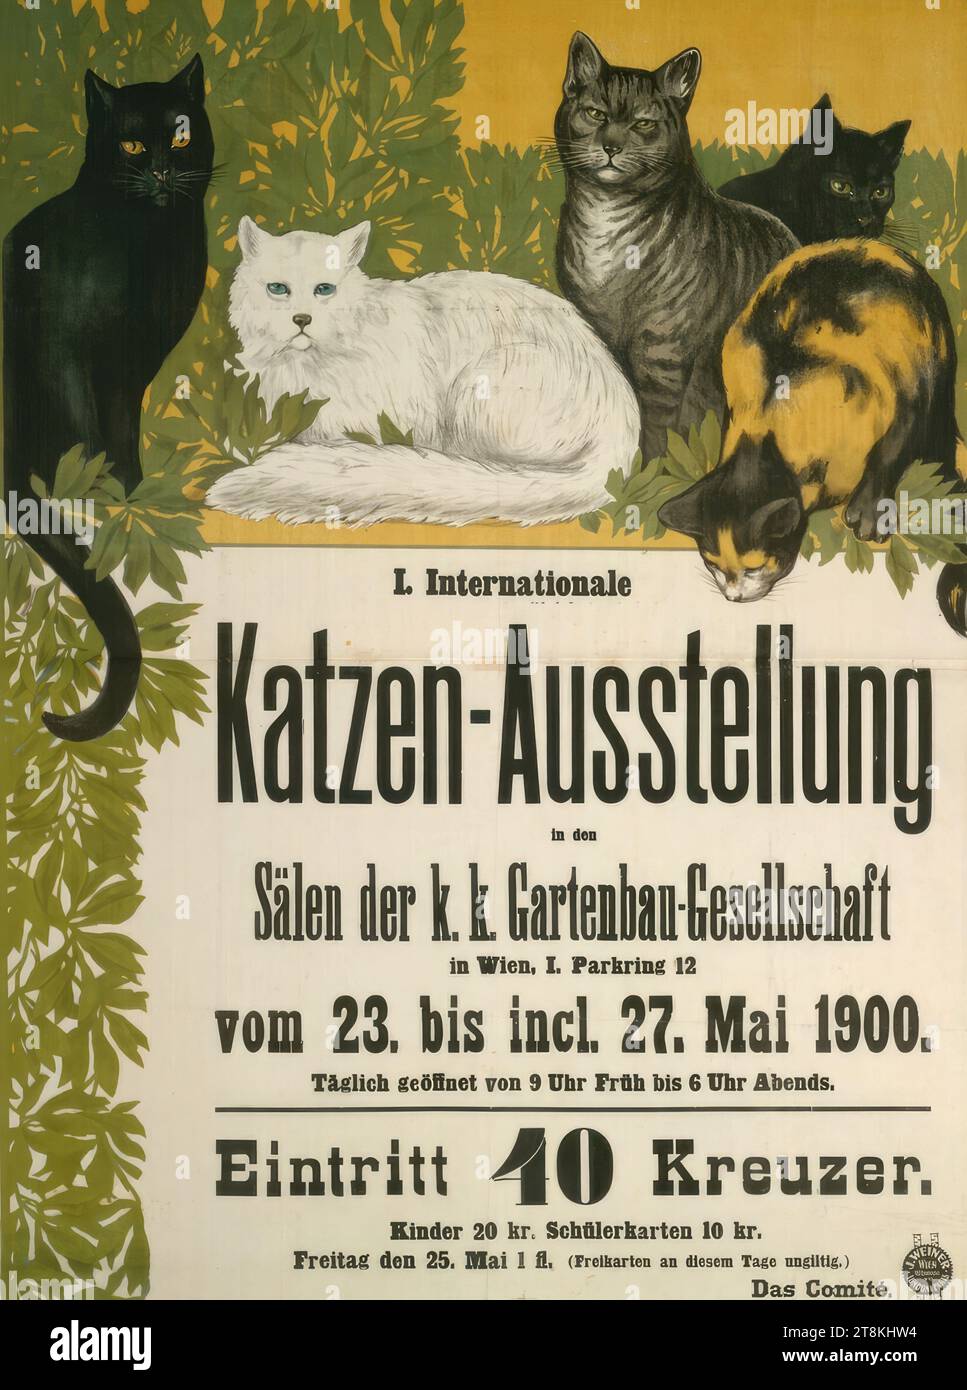 IO International Cat Exhibition, Vienna, 1900, Anonimo, 1900, stampa, litografia a colori, foglio: 1260 mm x 940 mm, Austria Foto Stock